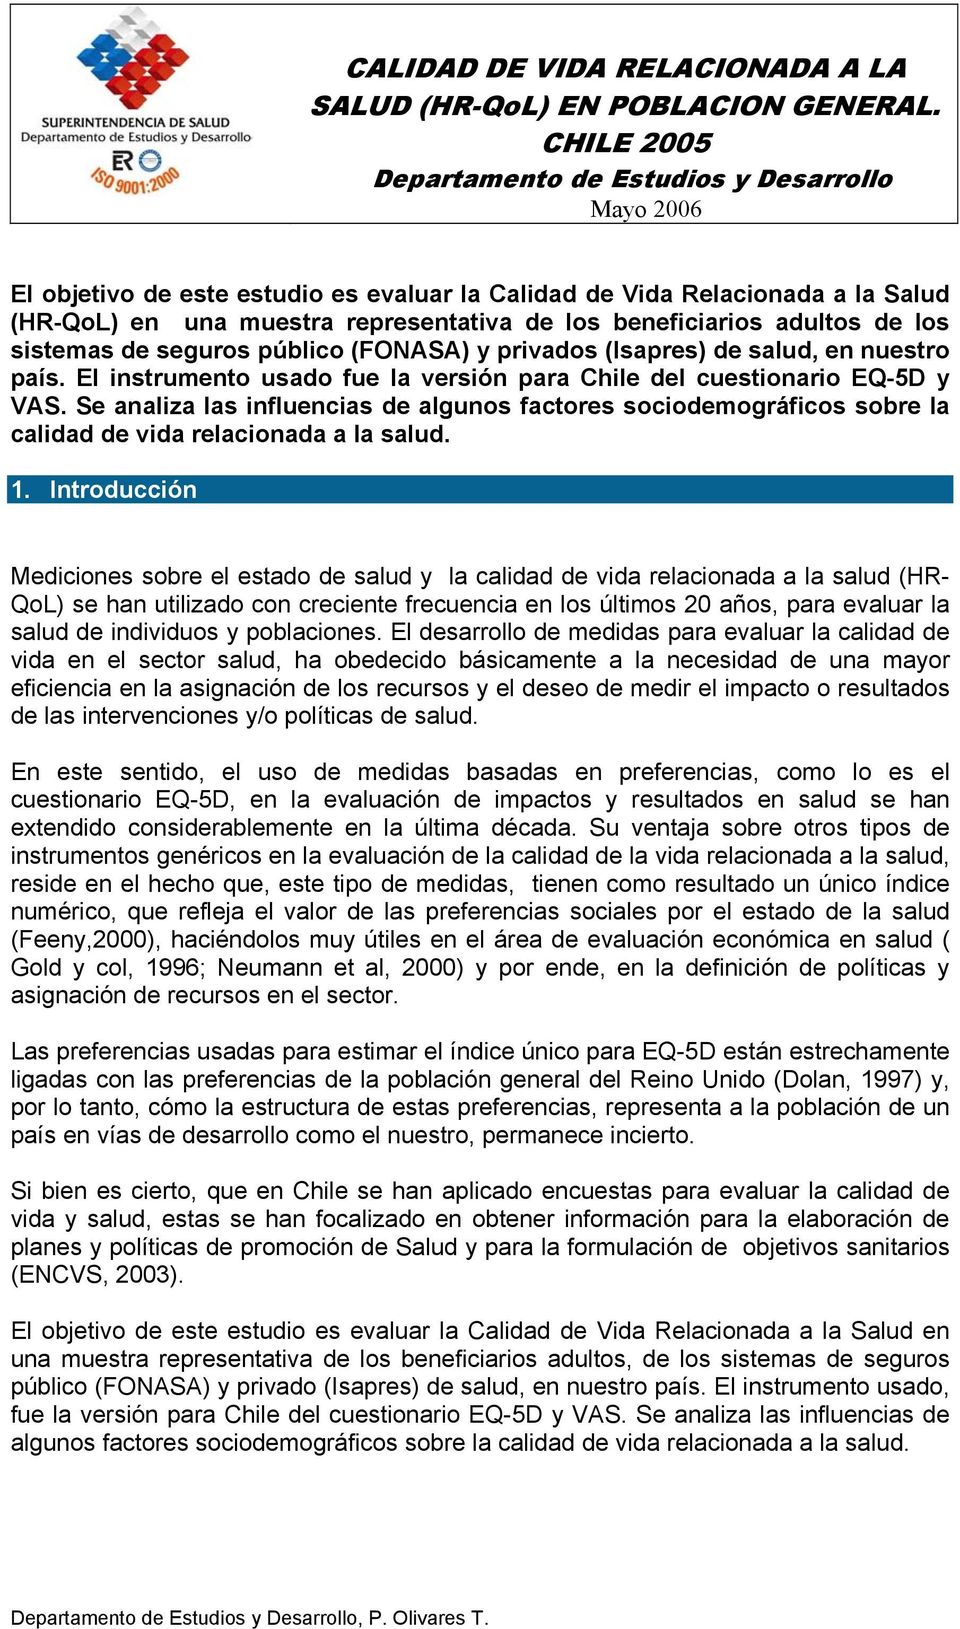 adultos de los sistemas de seguros público (FONASA) y privados (Isapres) de salud, en nuestro país. El instrumento usado fue la versión para Chile del cuestionario EQ-5D y VAS.